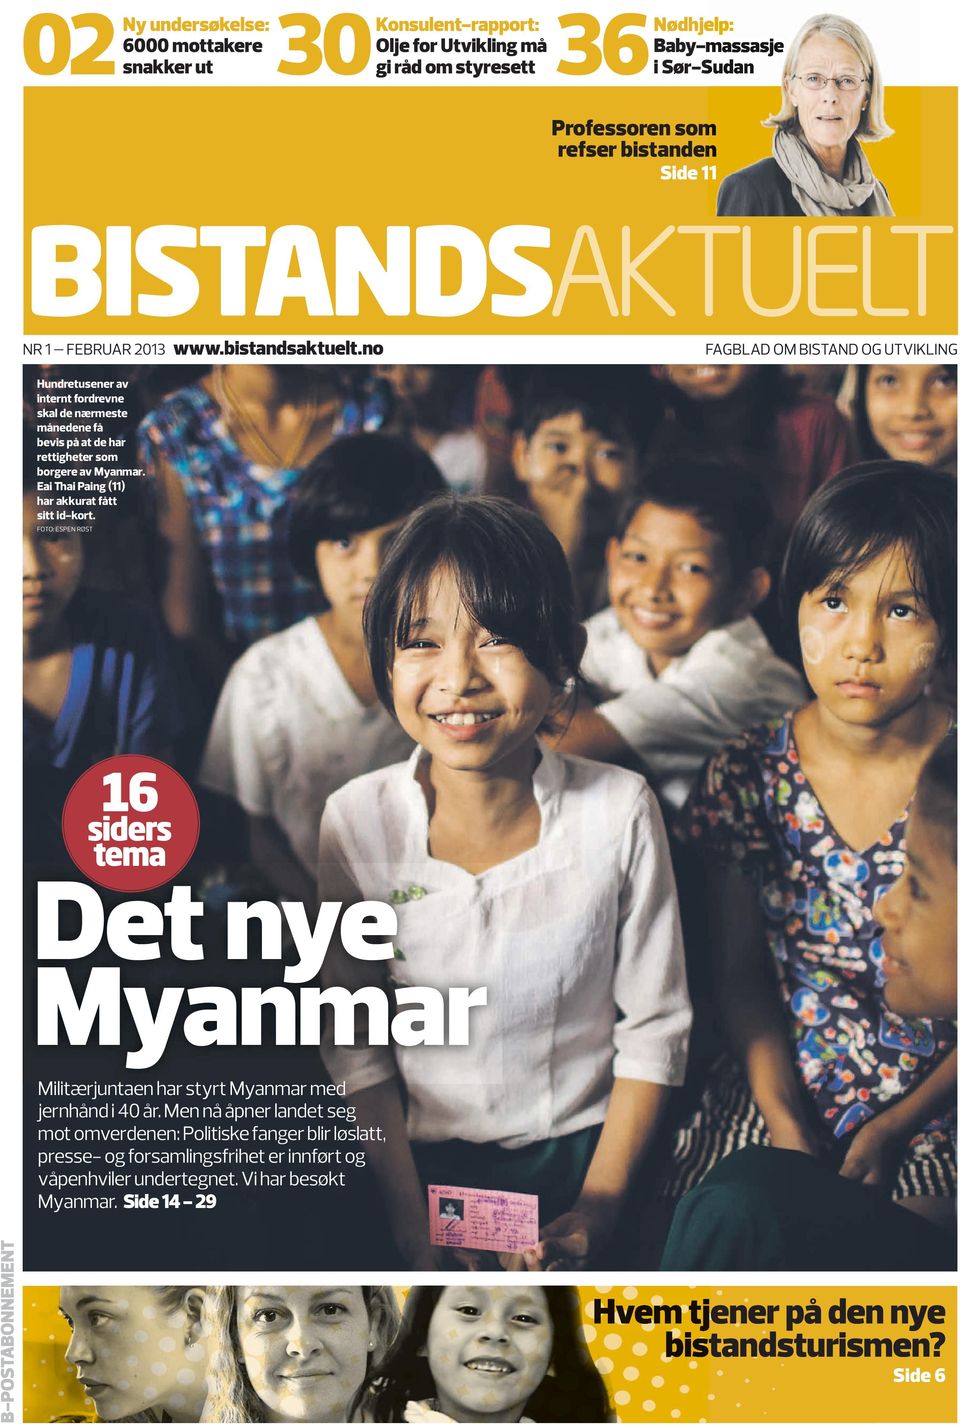 no fagblad OM bistand OG utvikling Hundretusener av internt fordrevne skal de nærmeste månedene få bevis på at de har rettigheter som borgere av Myanmar.